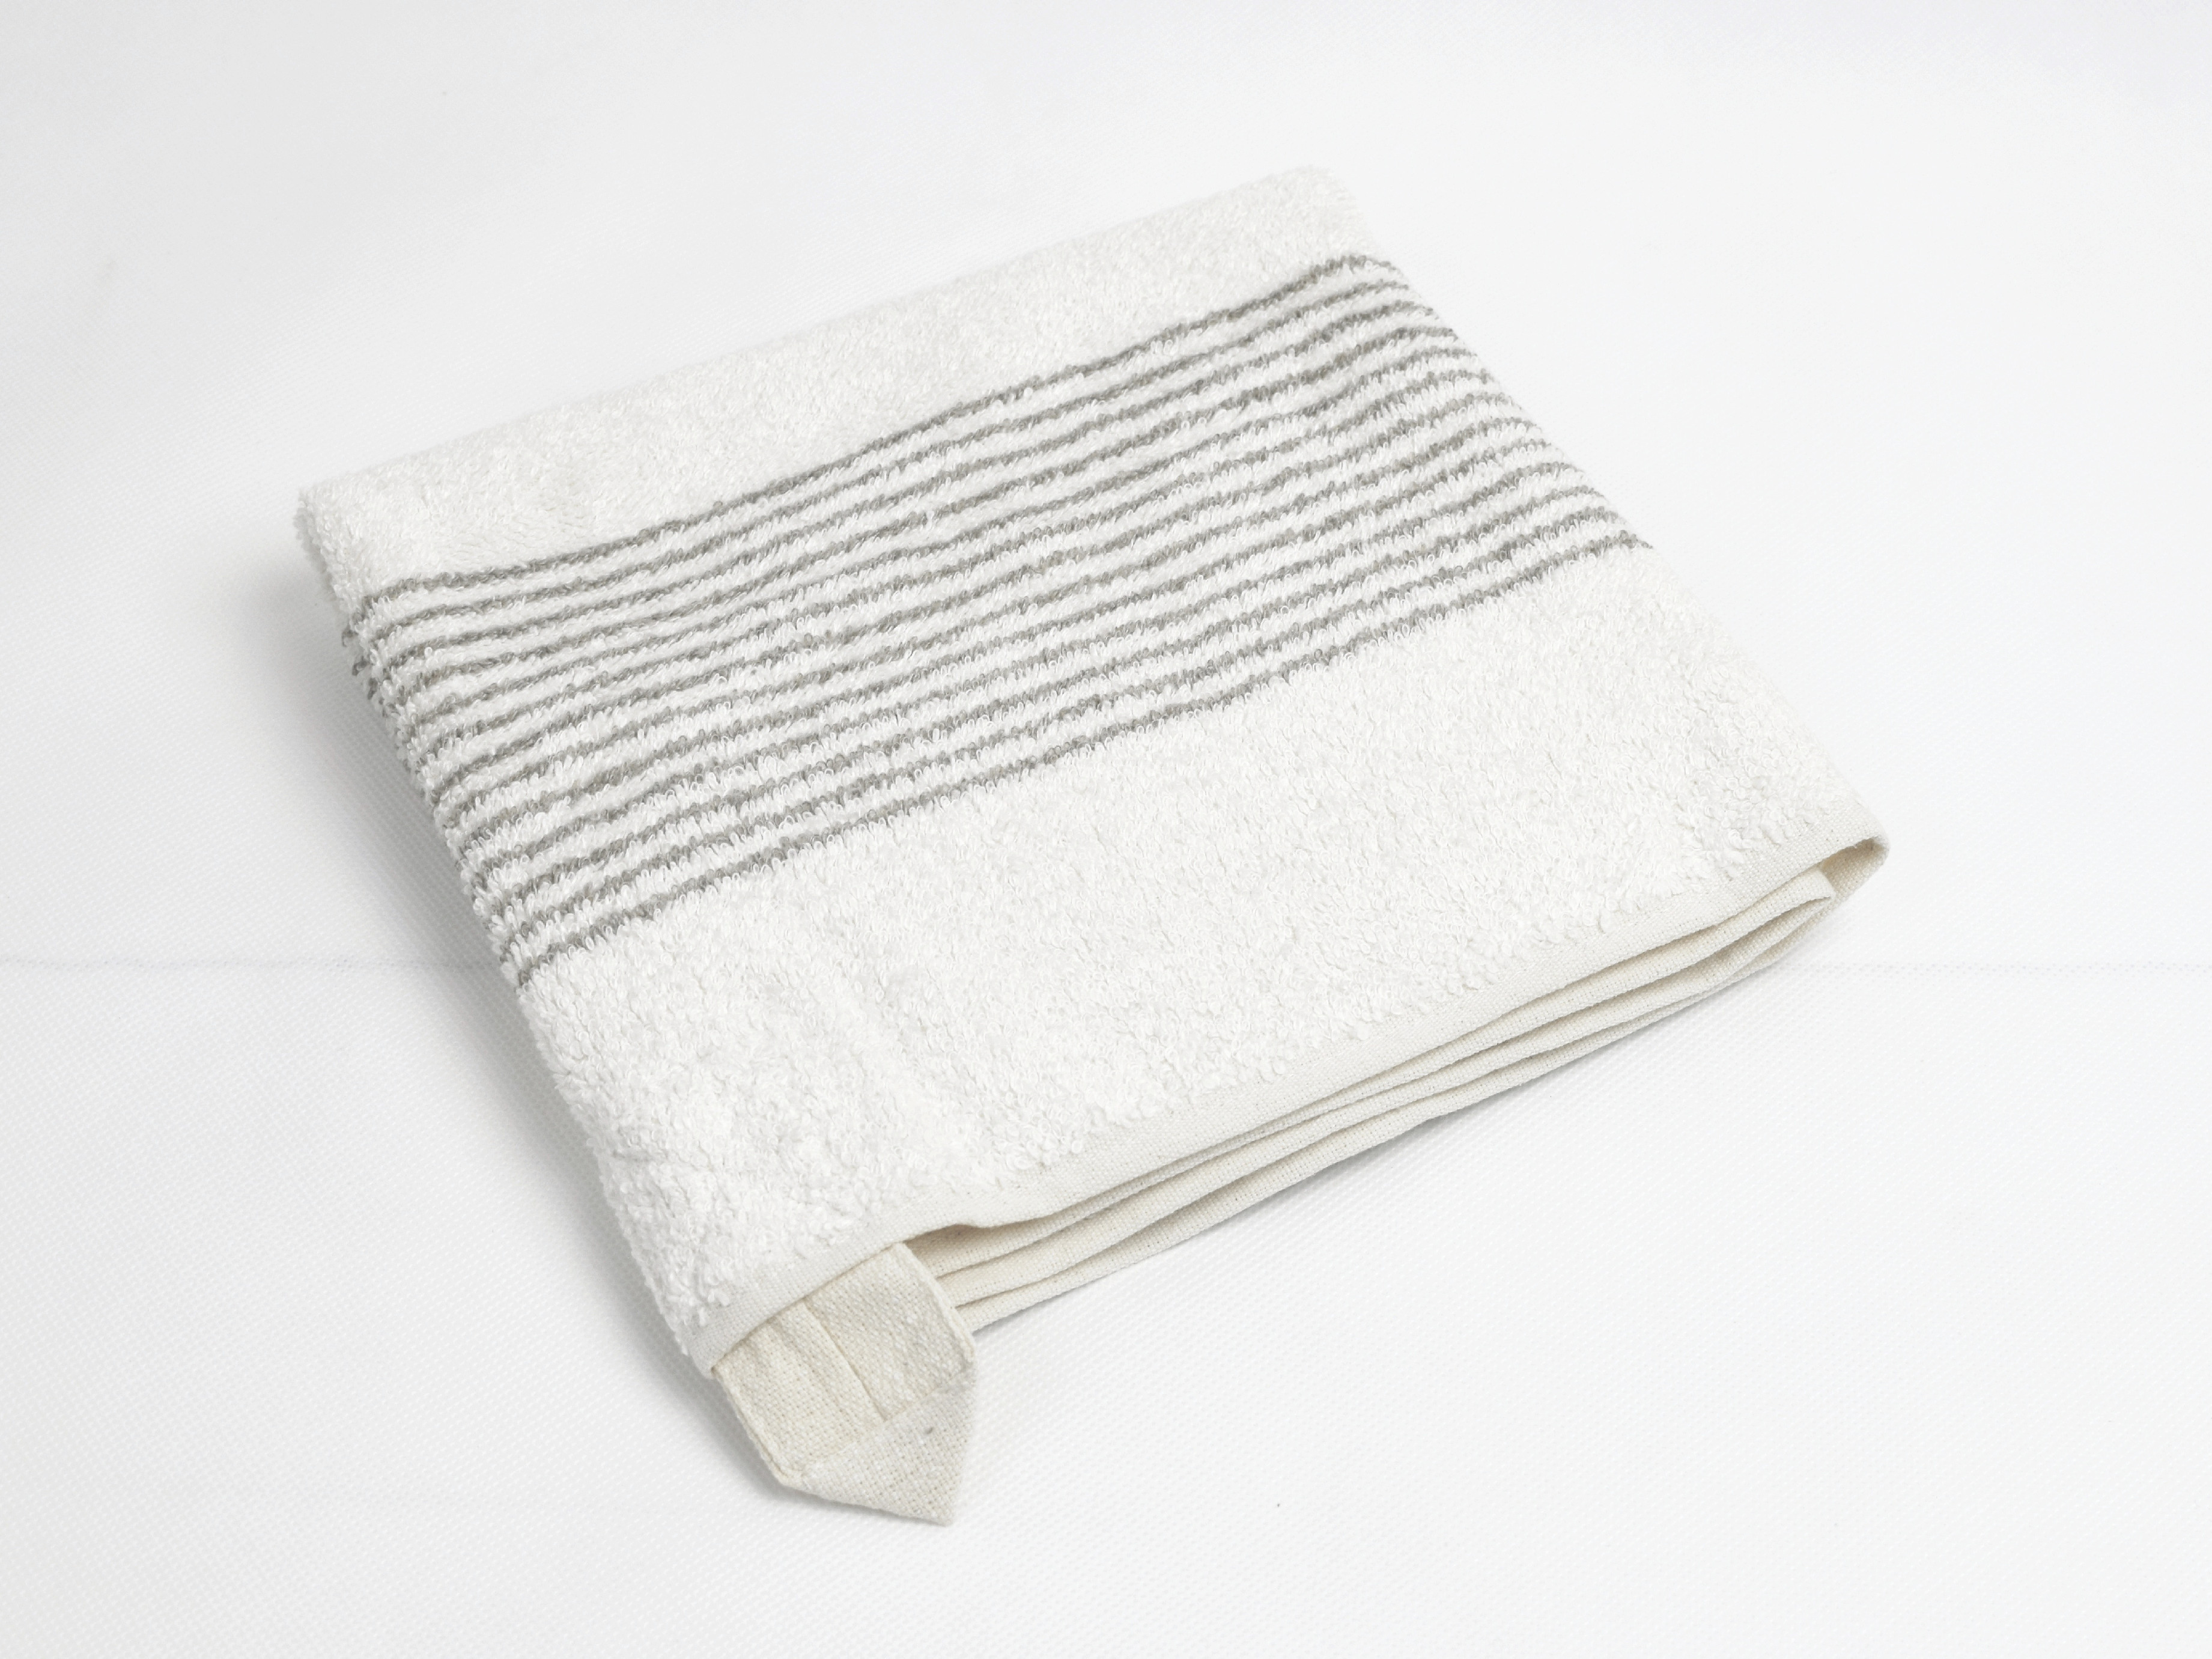 Lněný ručník měkký světlý proužek 30 x 50 cm